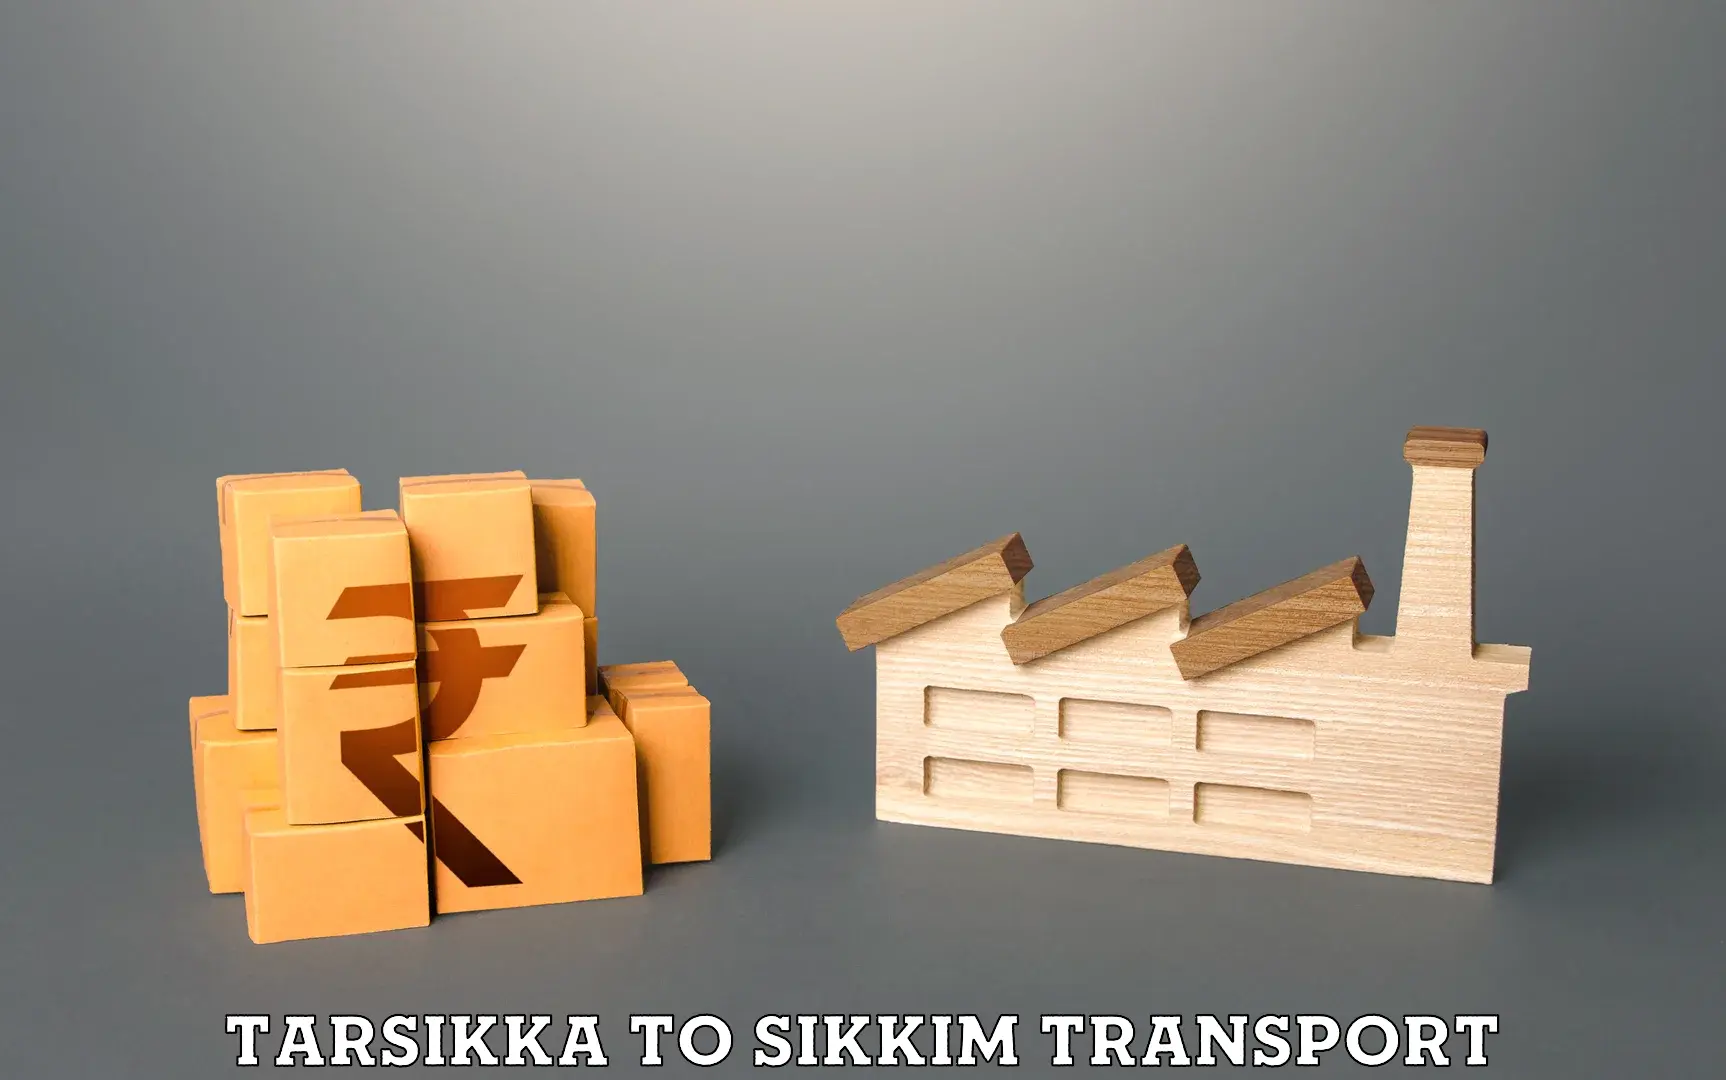 Transport in sharing Tarsikka to Mangan